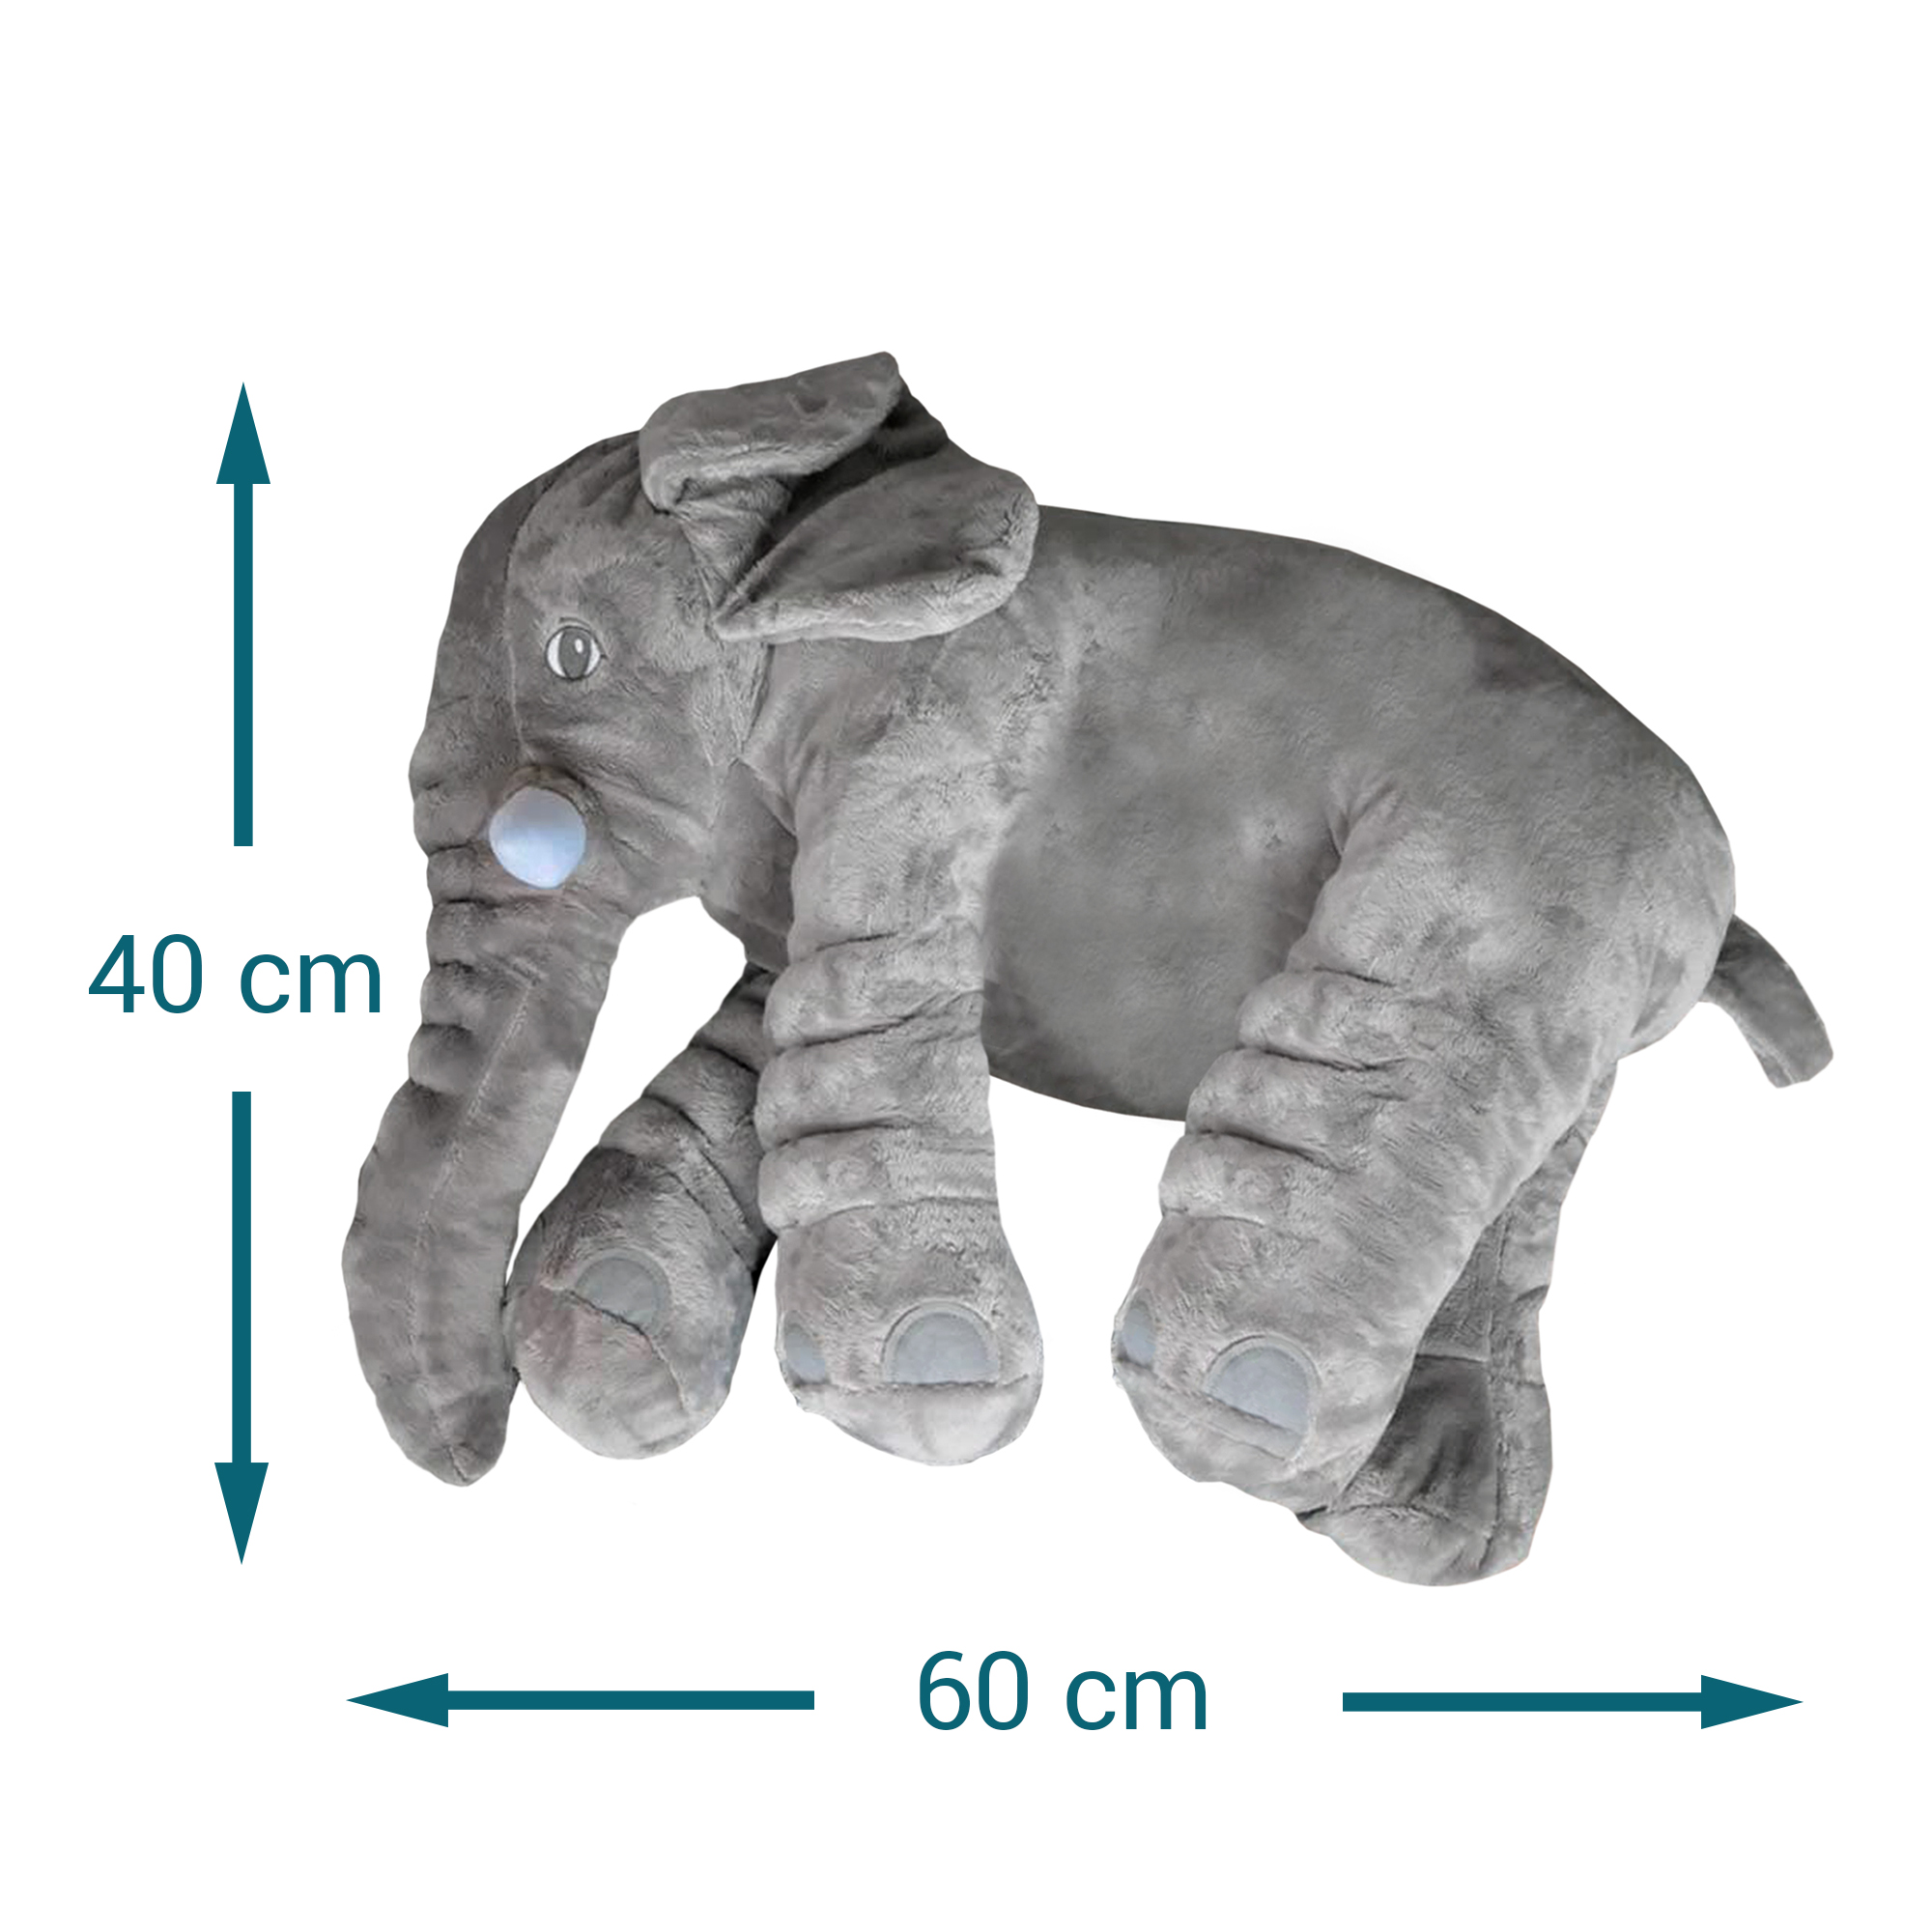 Y & D Baby Soft Plüsch Elefant Schlafkissen Gefüllte Kissen Tiere Elefant Baby Spielzeug Pals Kissen Spielzeug Für Kinder 